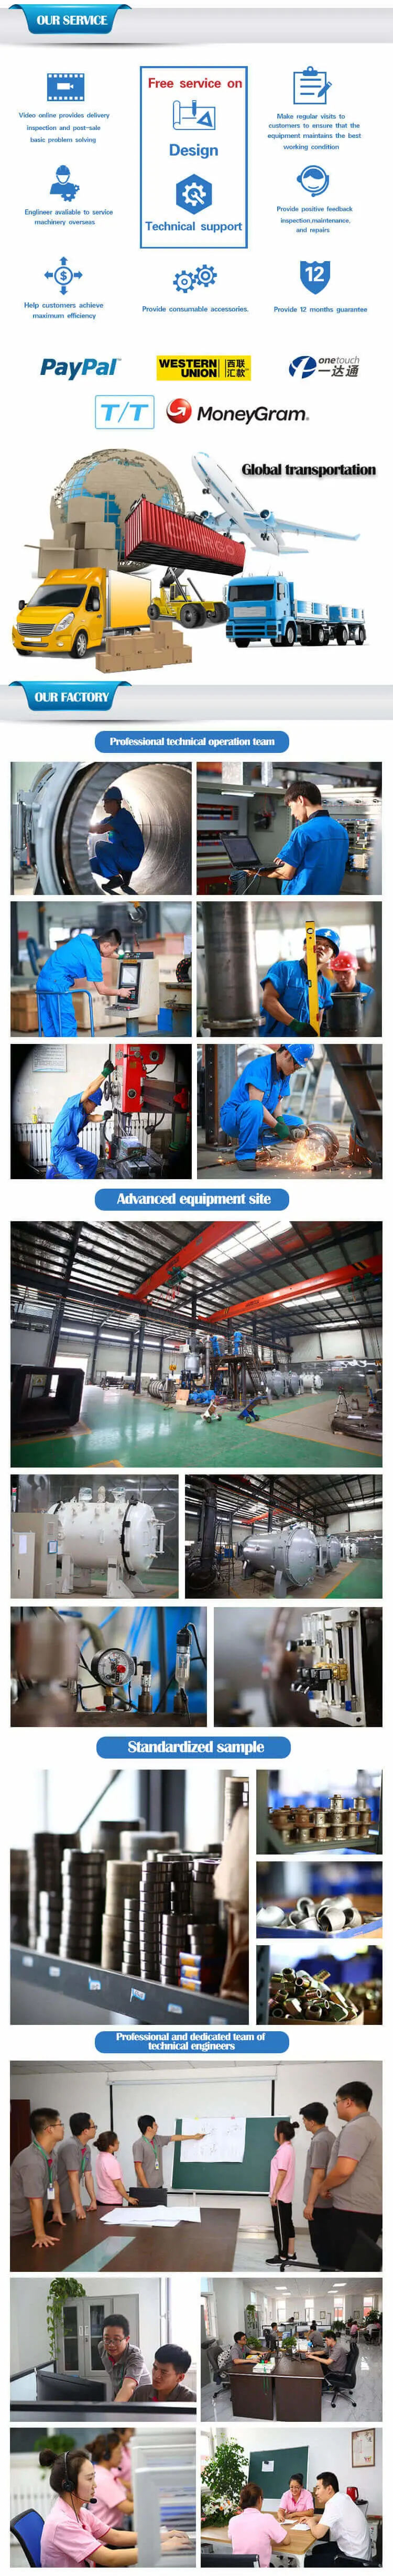 Shenyang Densen Customized Induction Furnace Vacuum Degreasing Sintering Furnace Vd6611